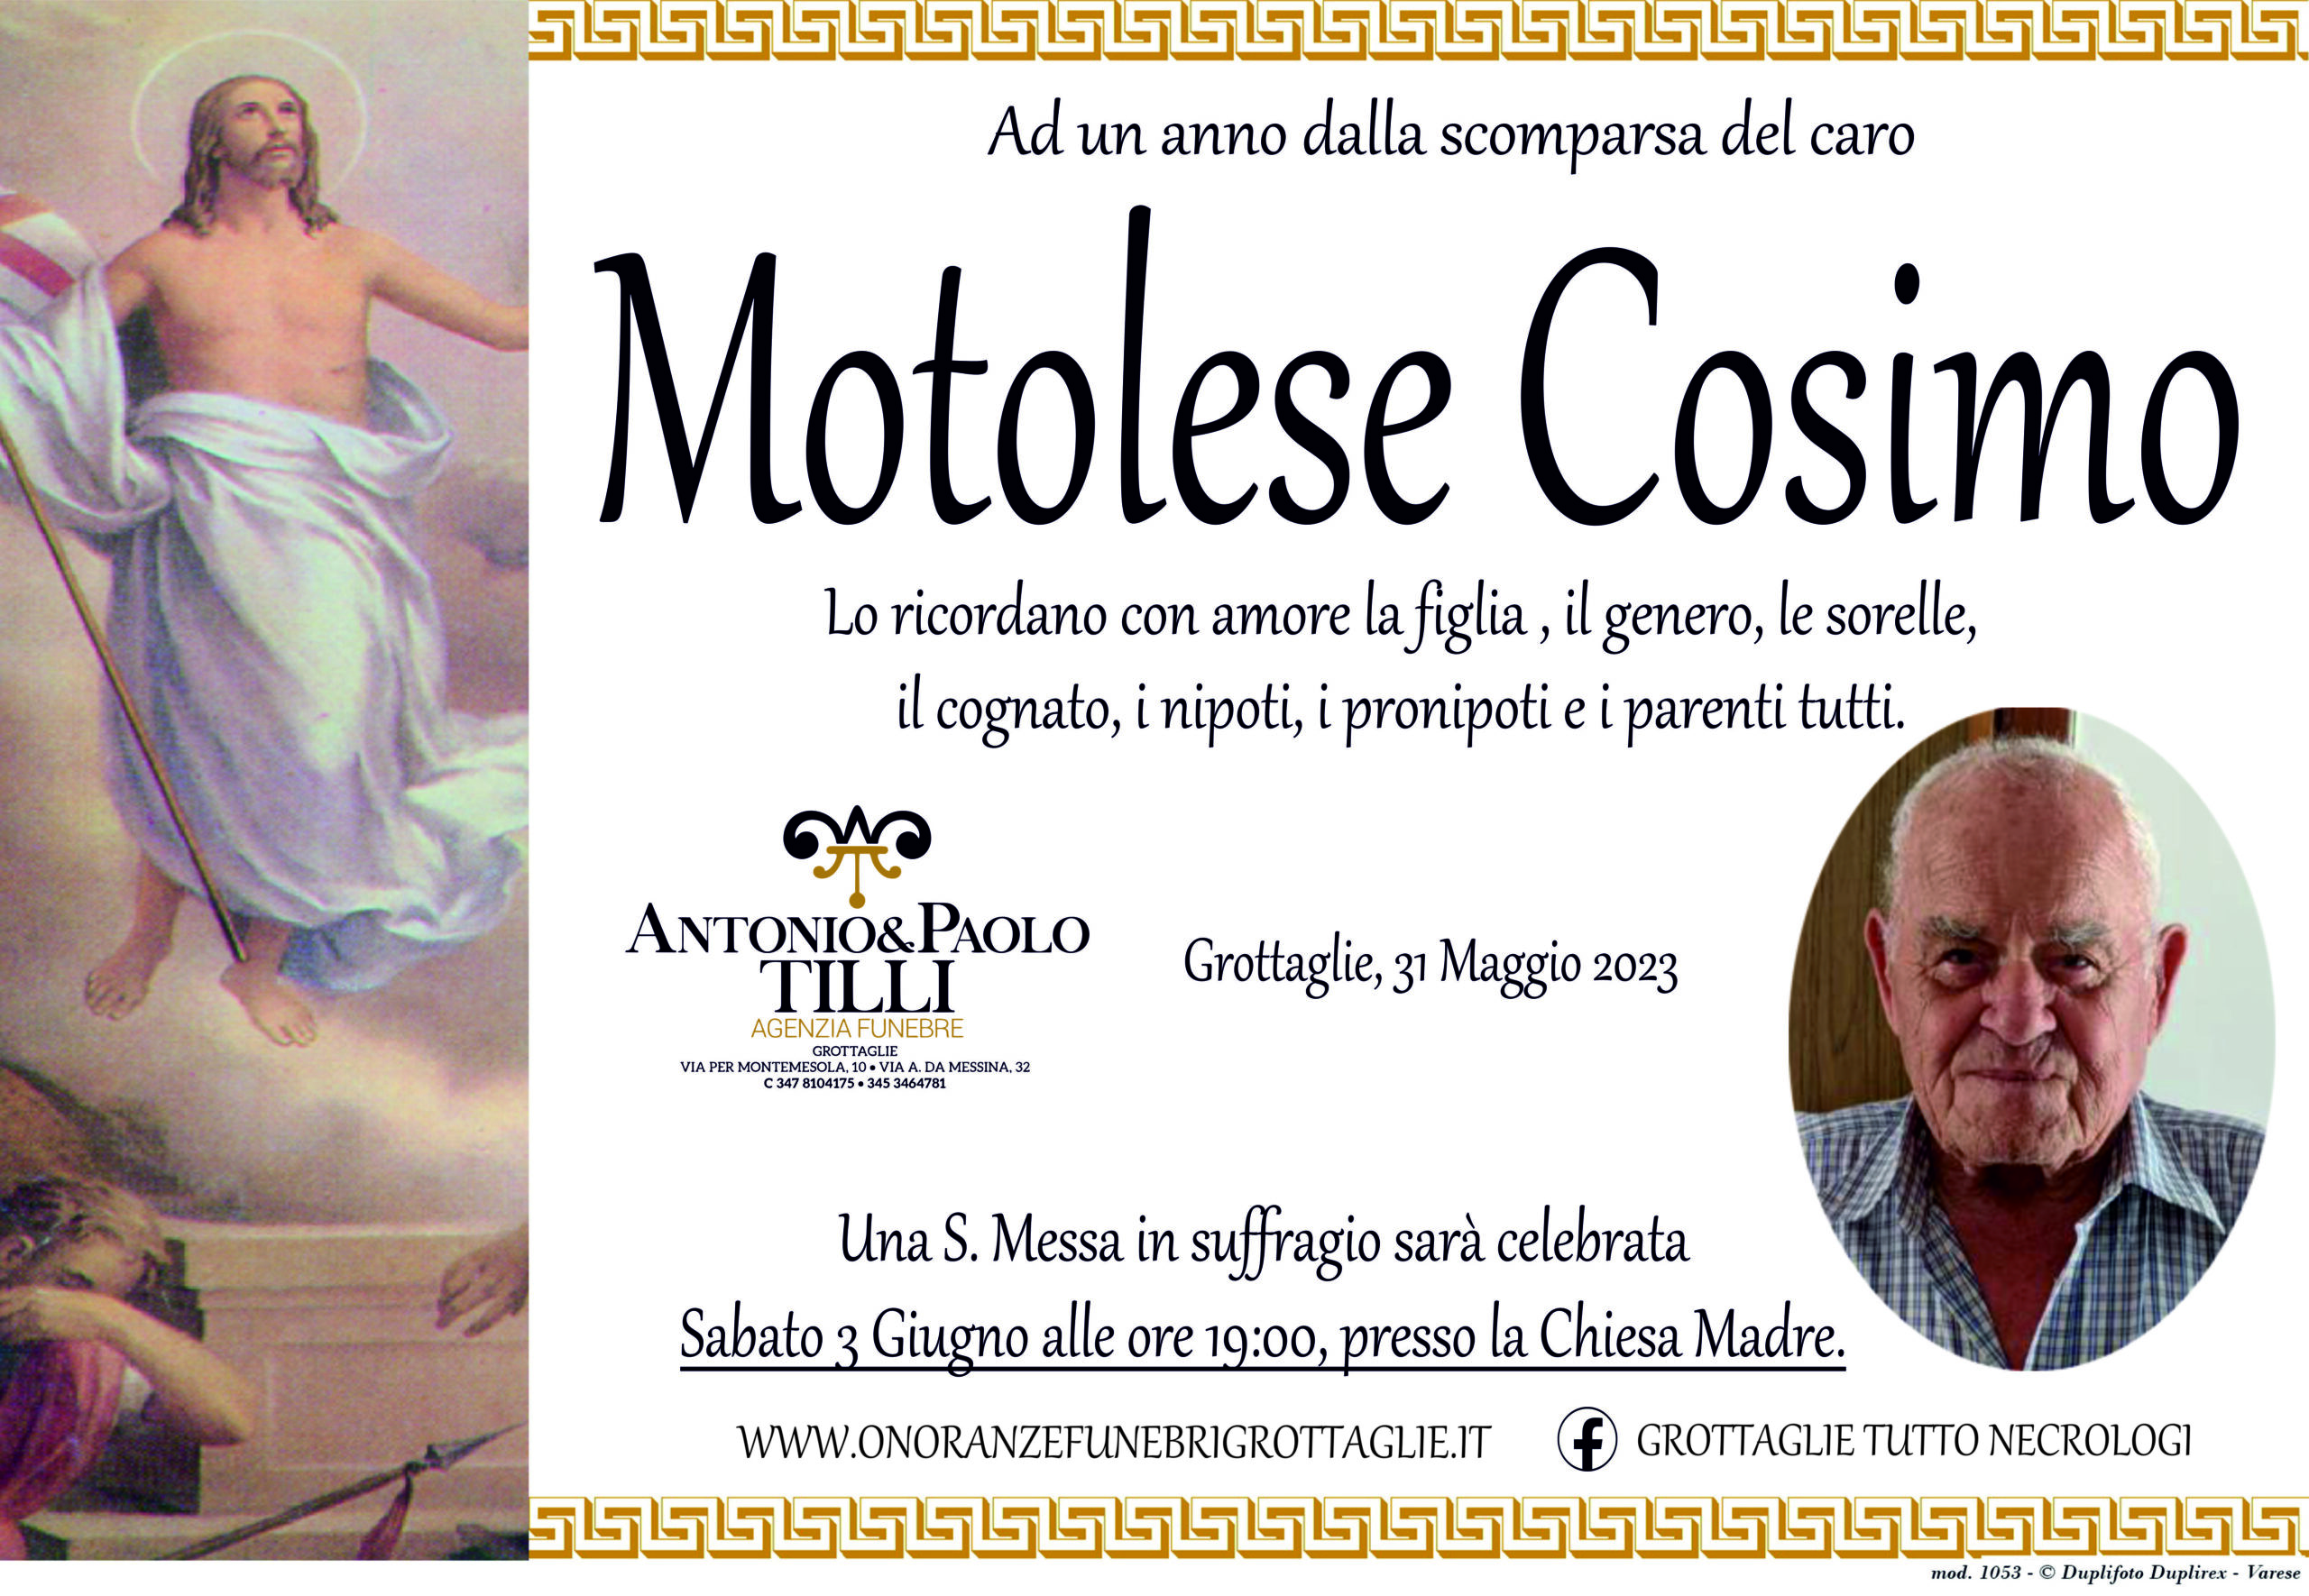 Anniversario Motolese Cosimo